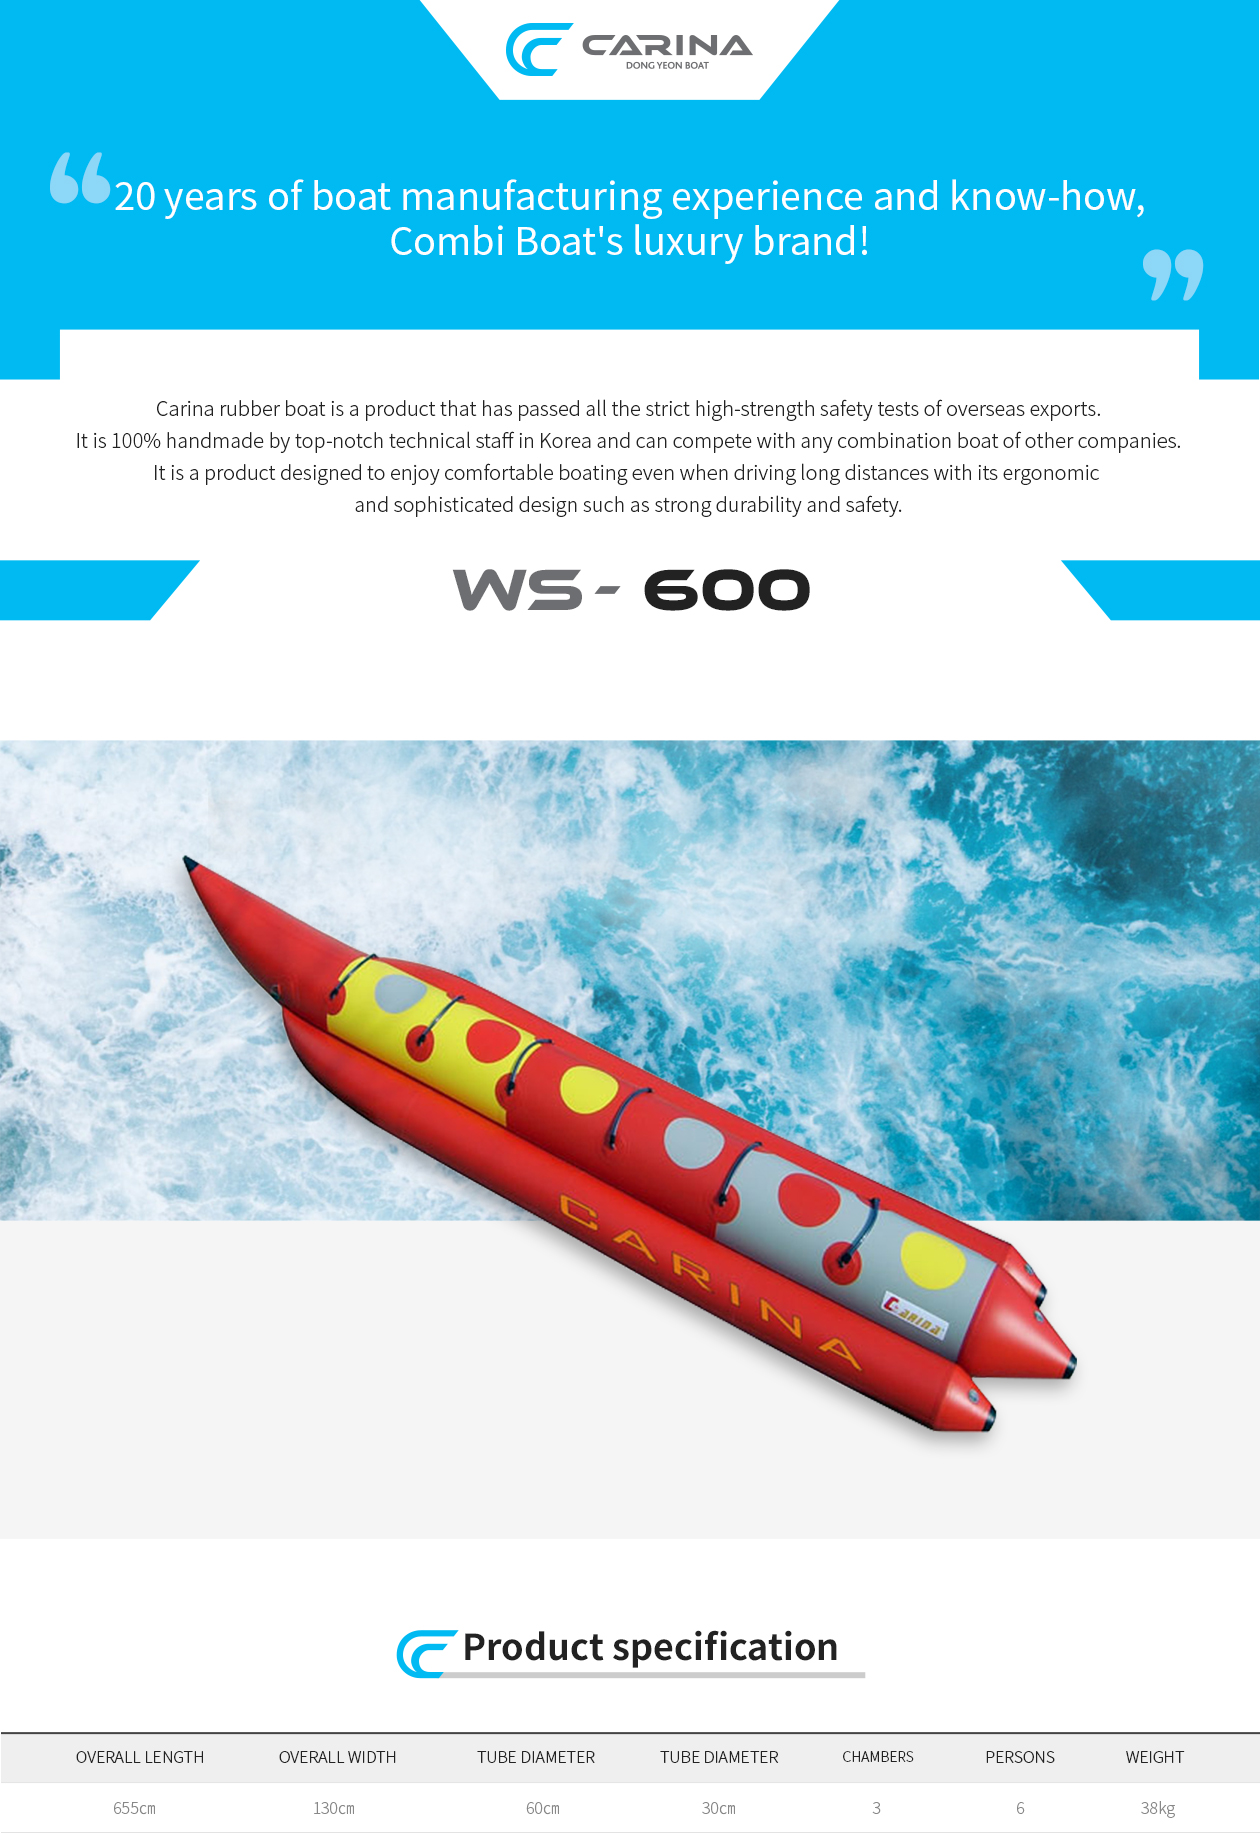 WS-600